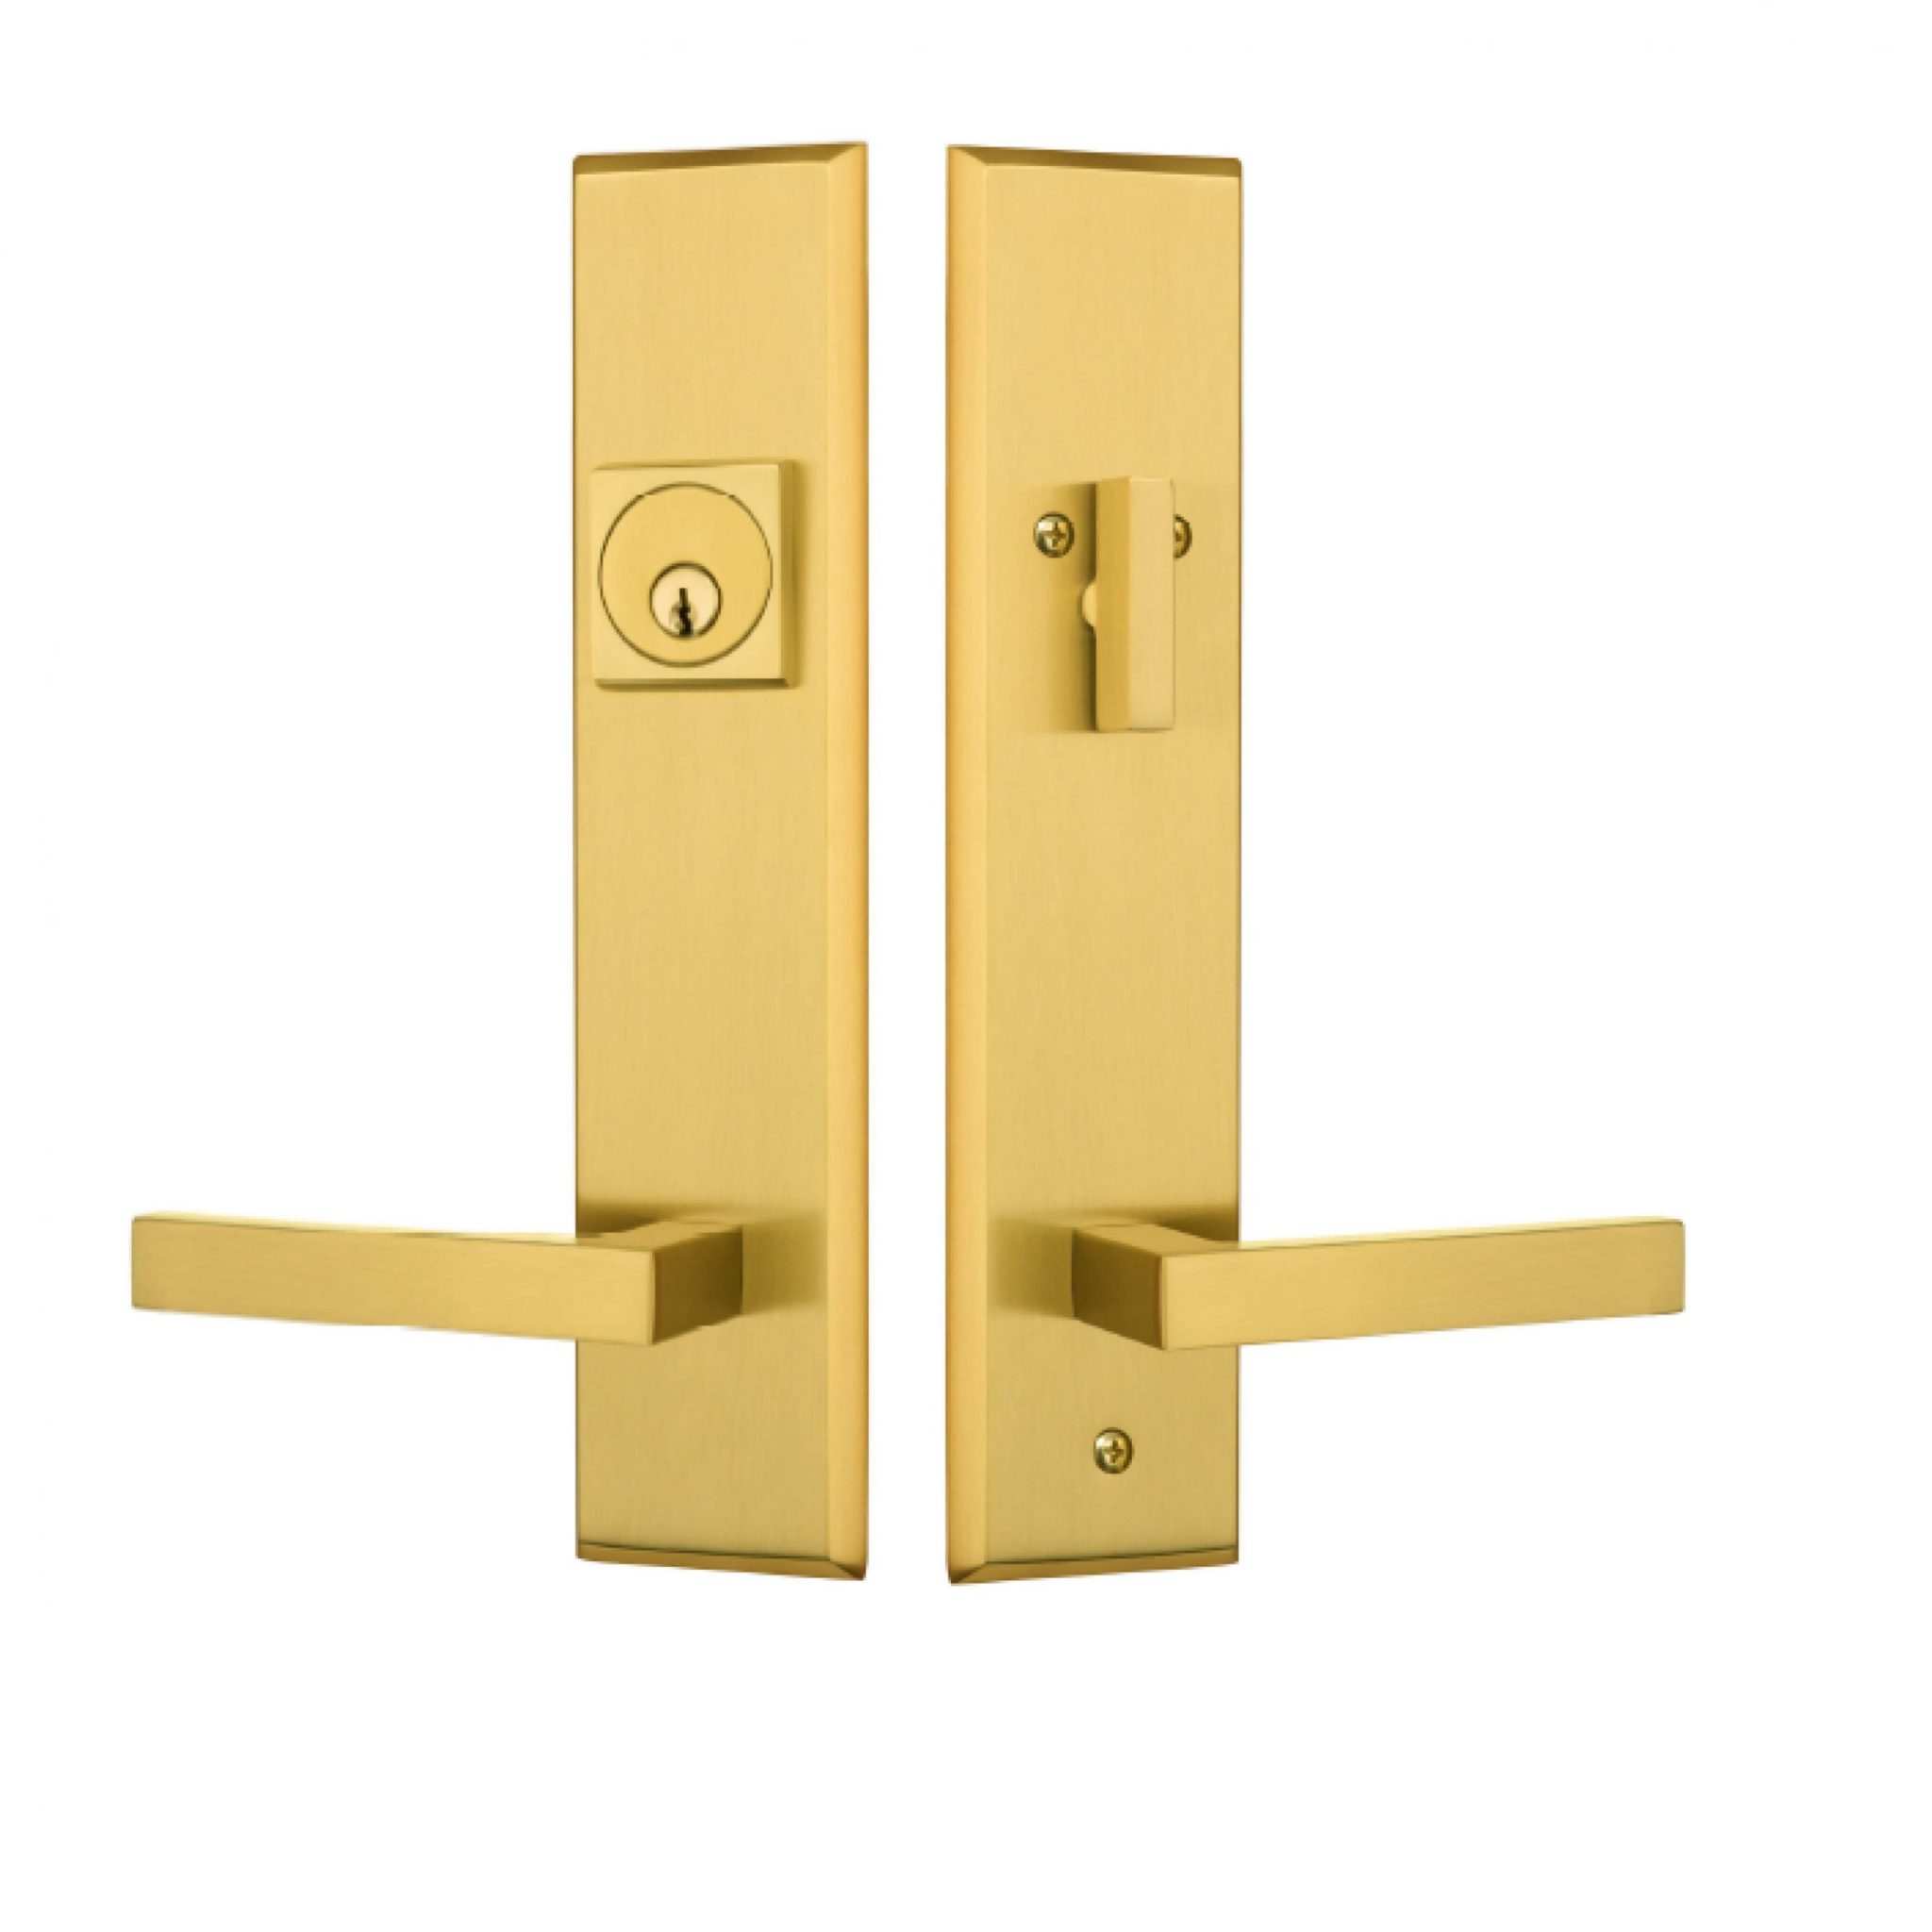 rockwell times sqaure door handlein brushed brass